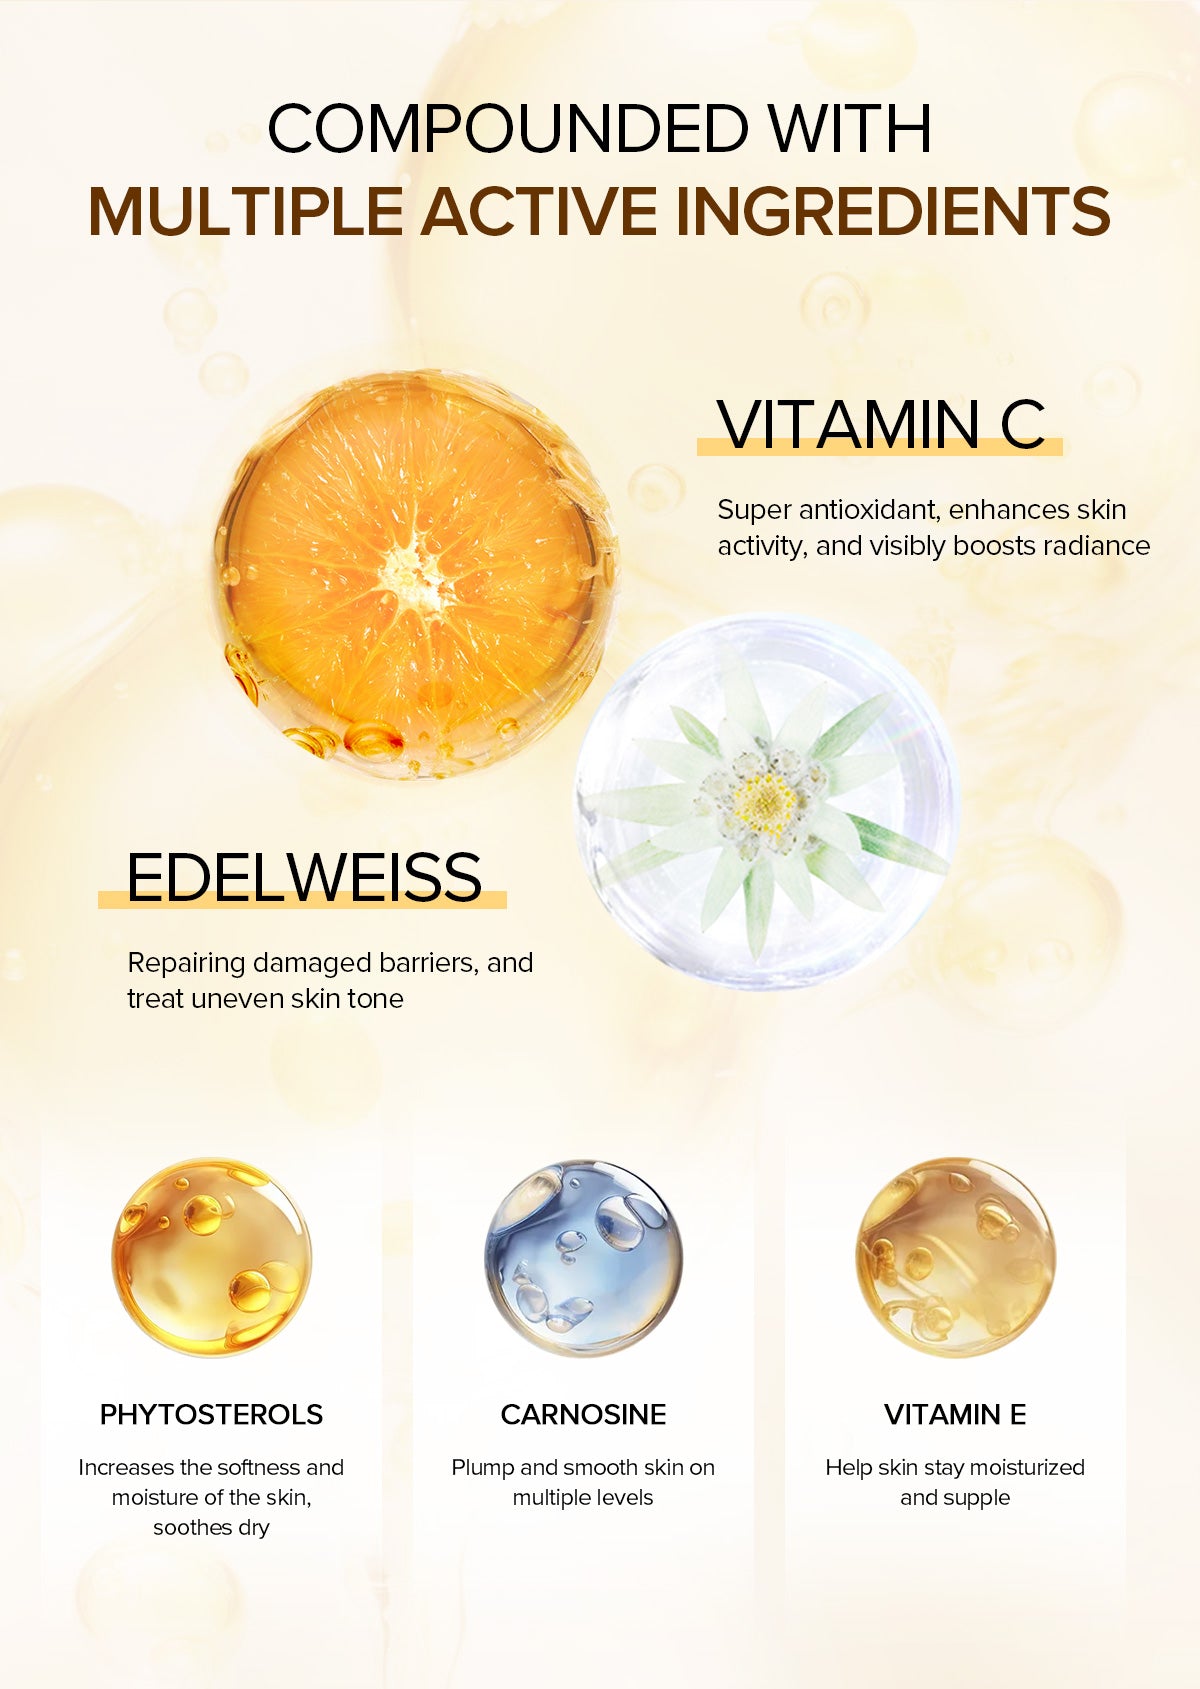 Private Label & Wholesale Vitamin C Brightening Hand Cream